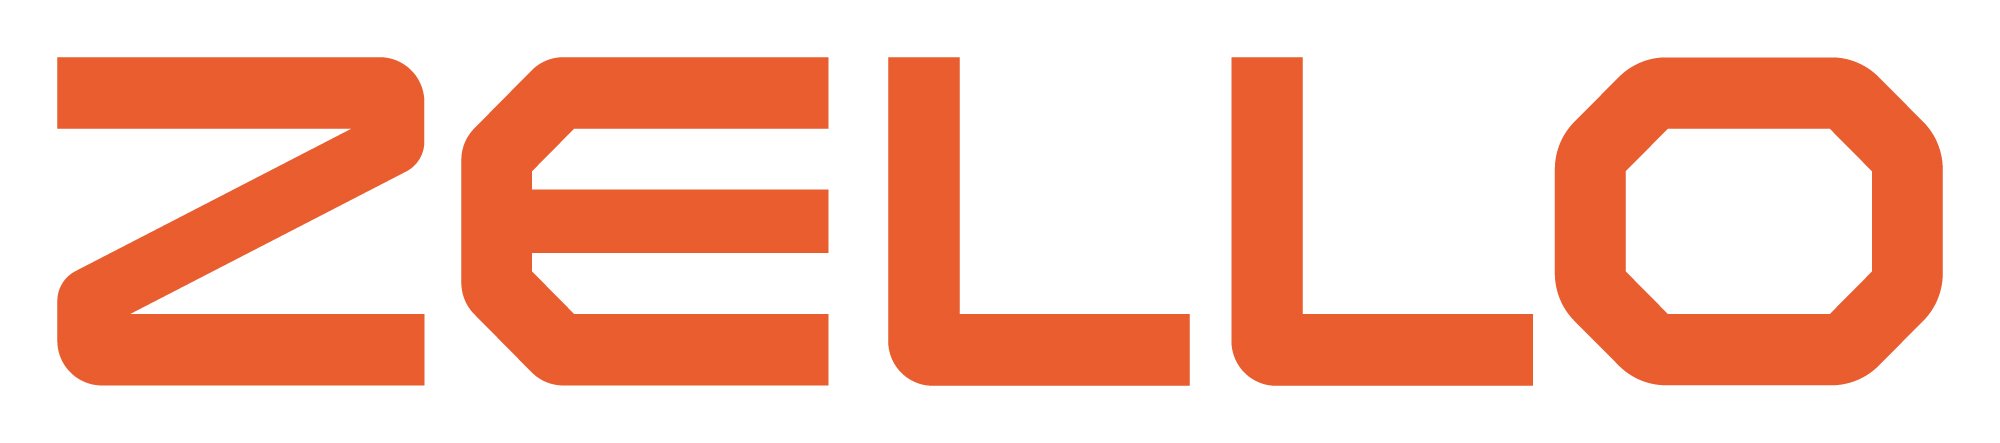 zello-logo-full-color-rgb-2000px@72ppi (3).jpg